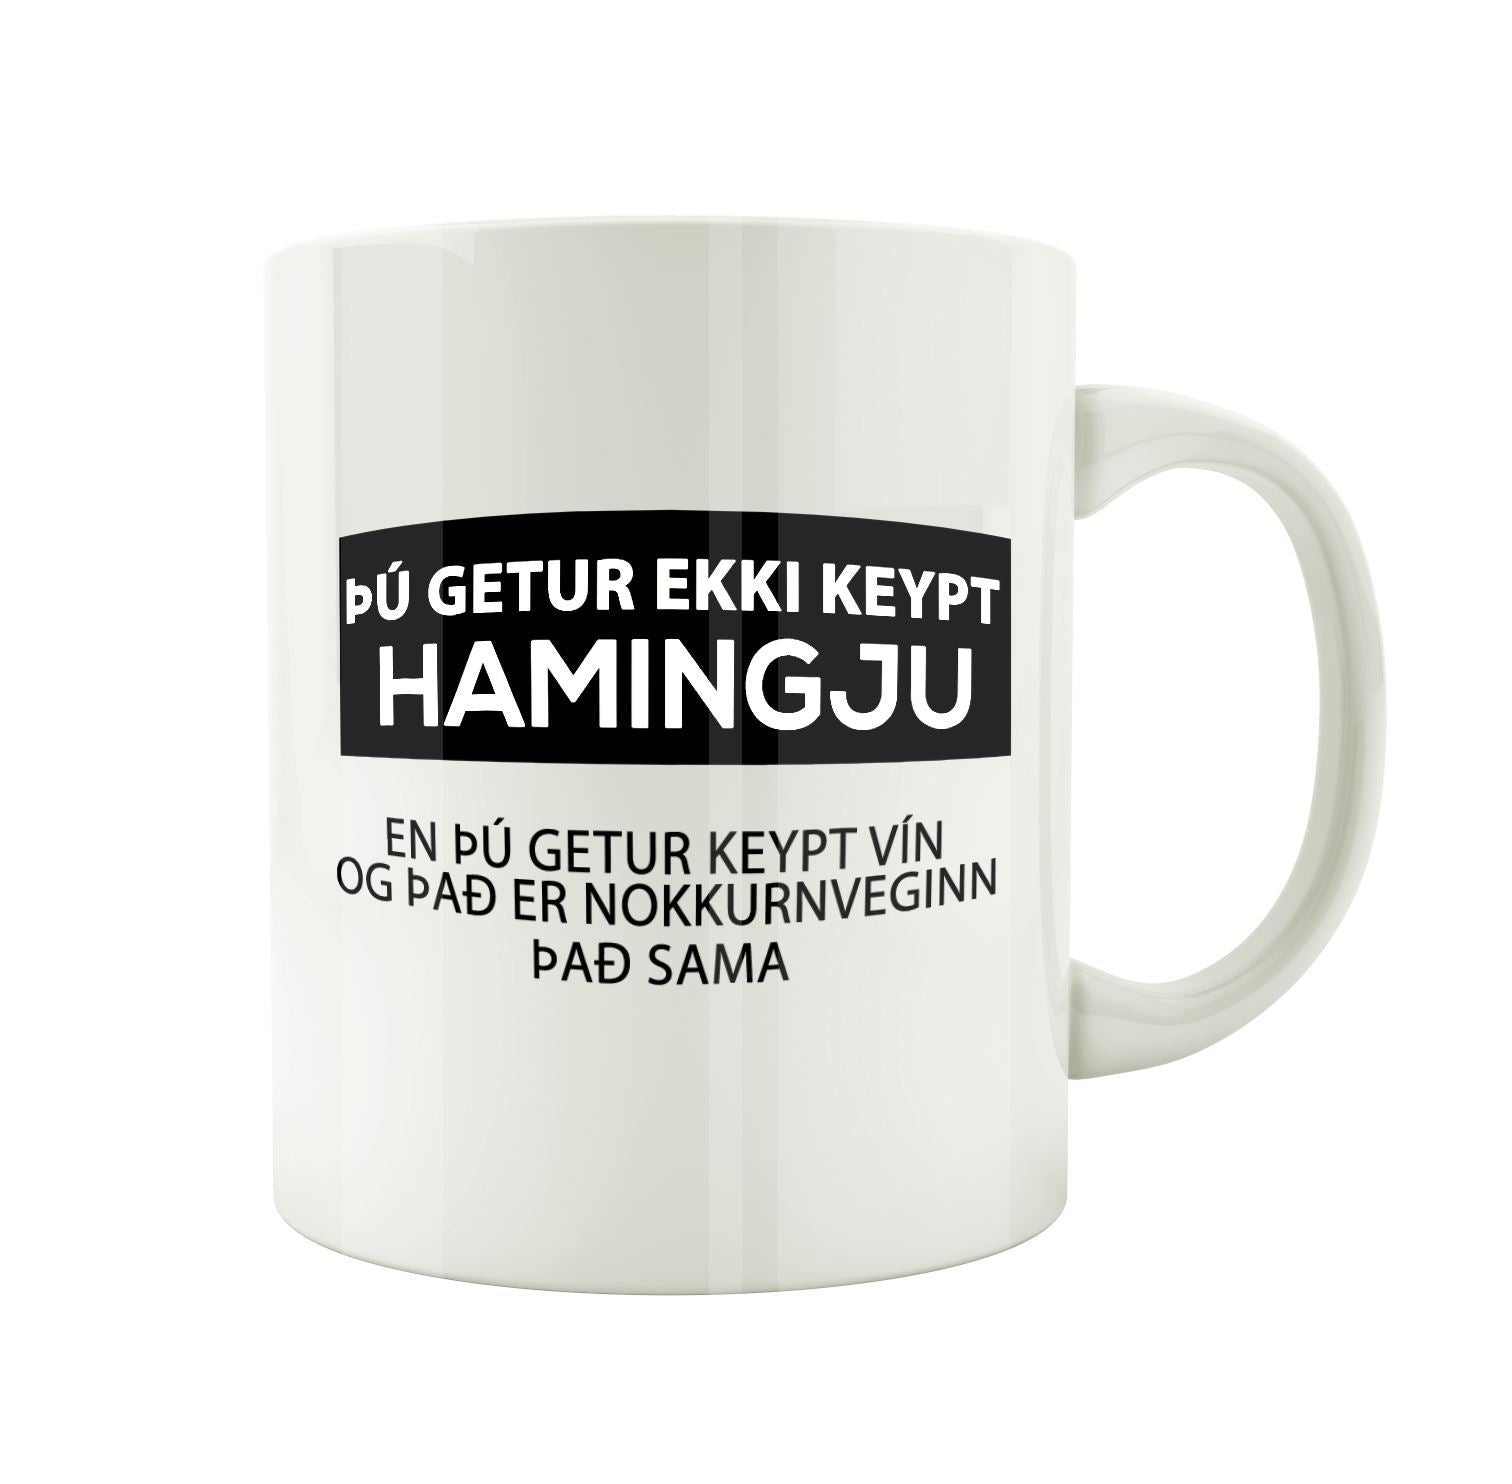 Þú getur ekki keypt hamingu en þú getur keypt vín og það er nokkurnveginn það sama.